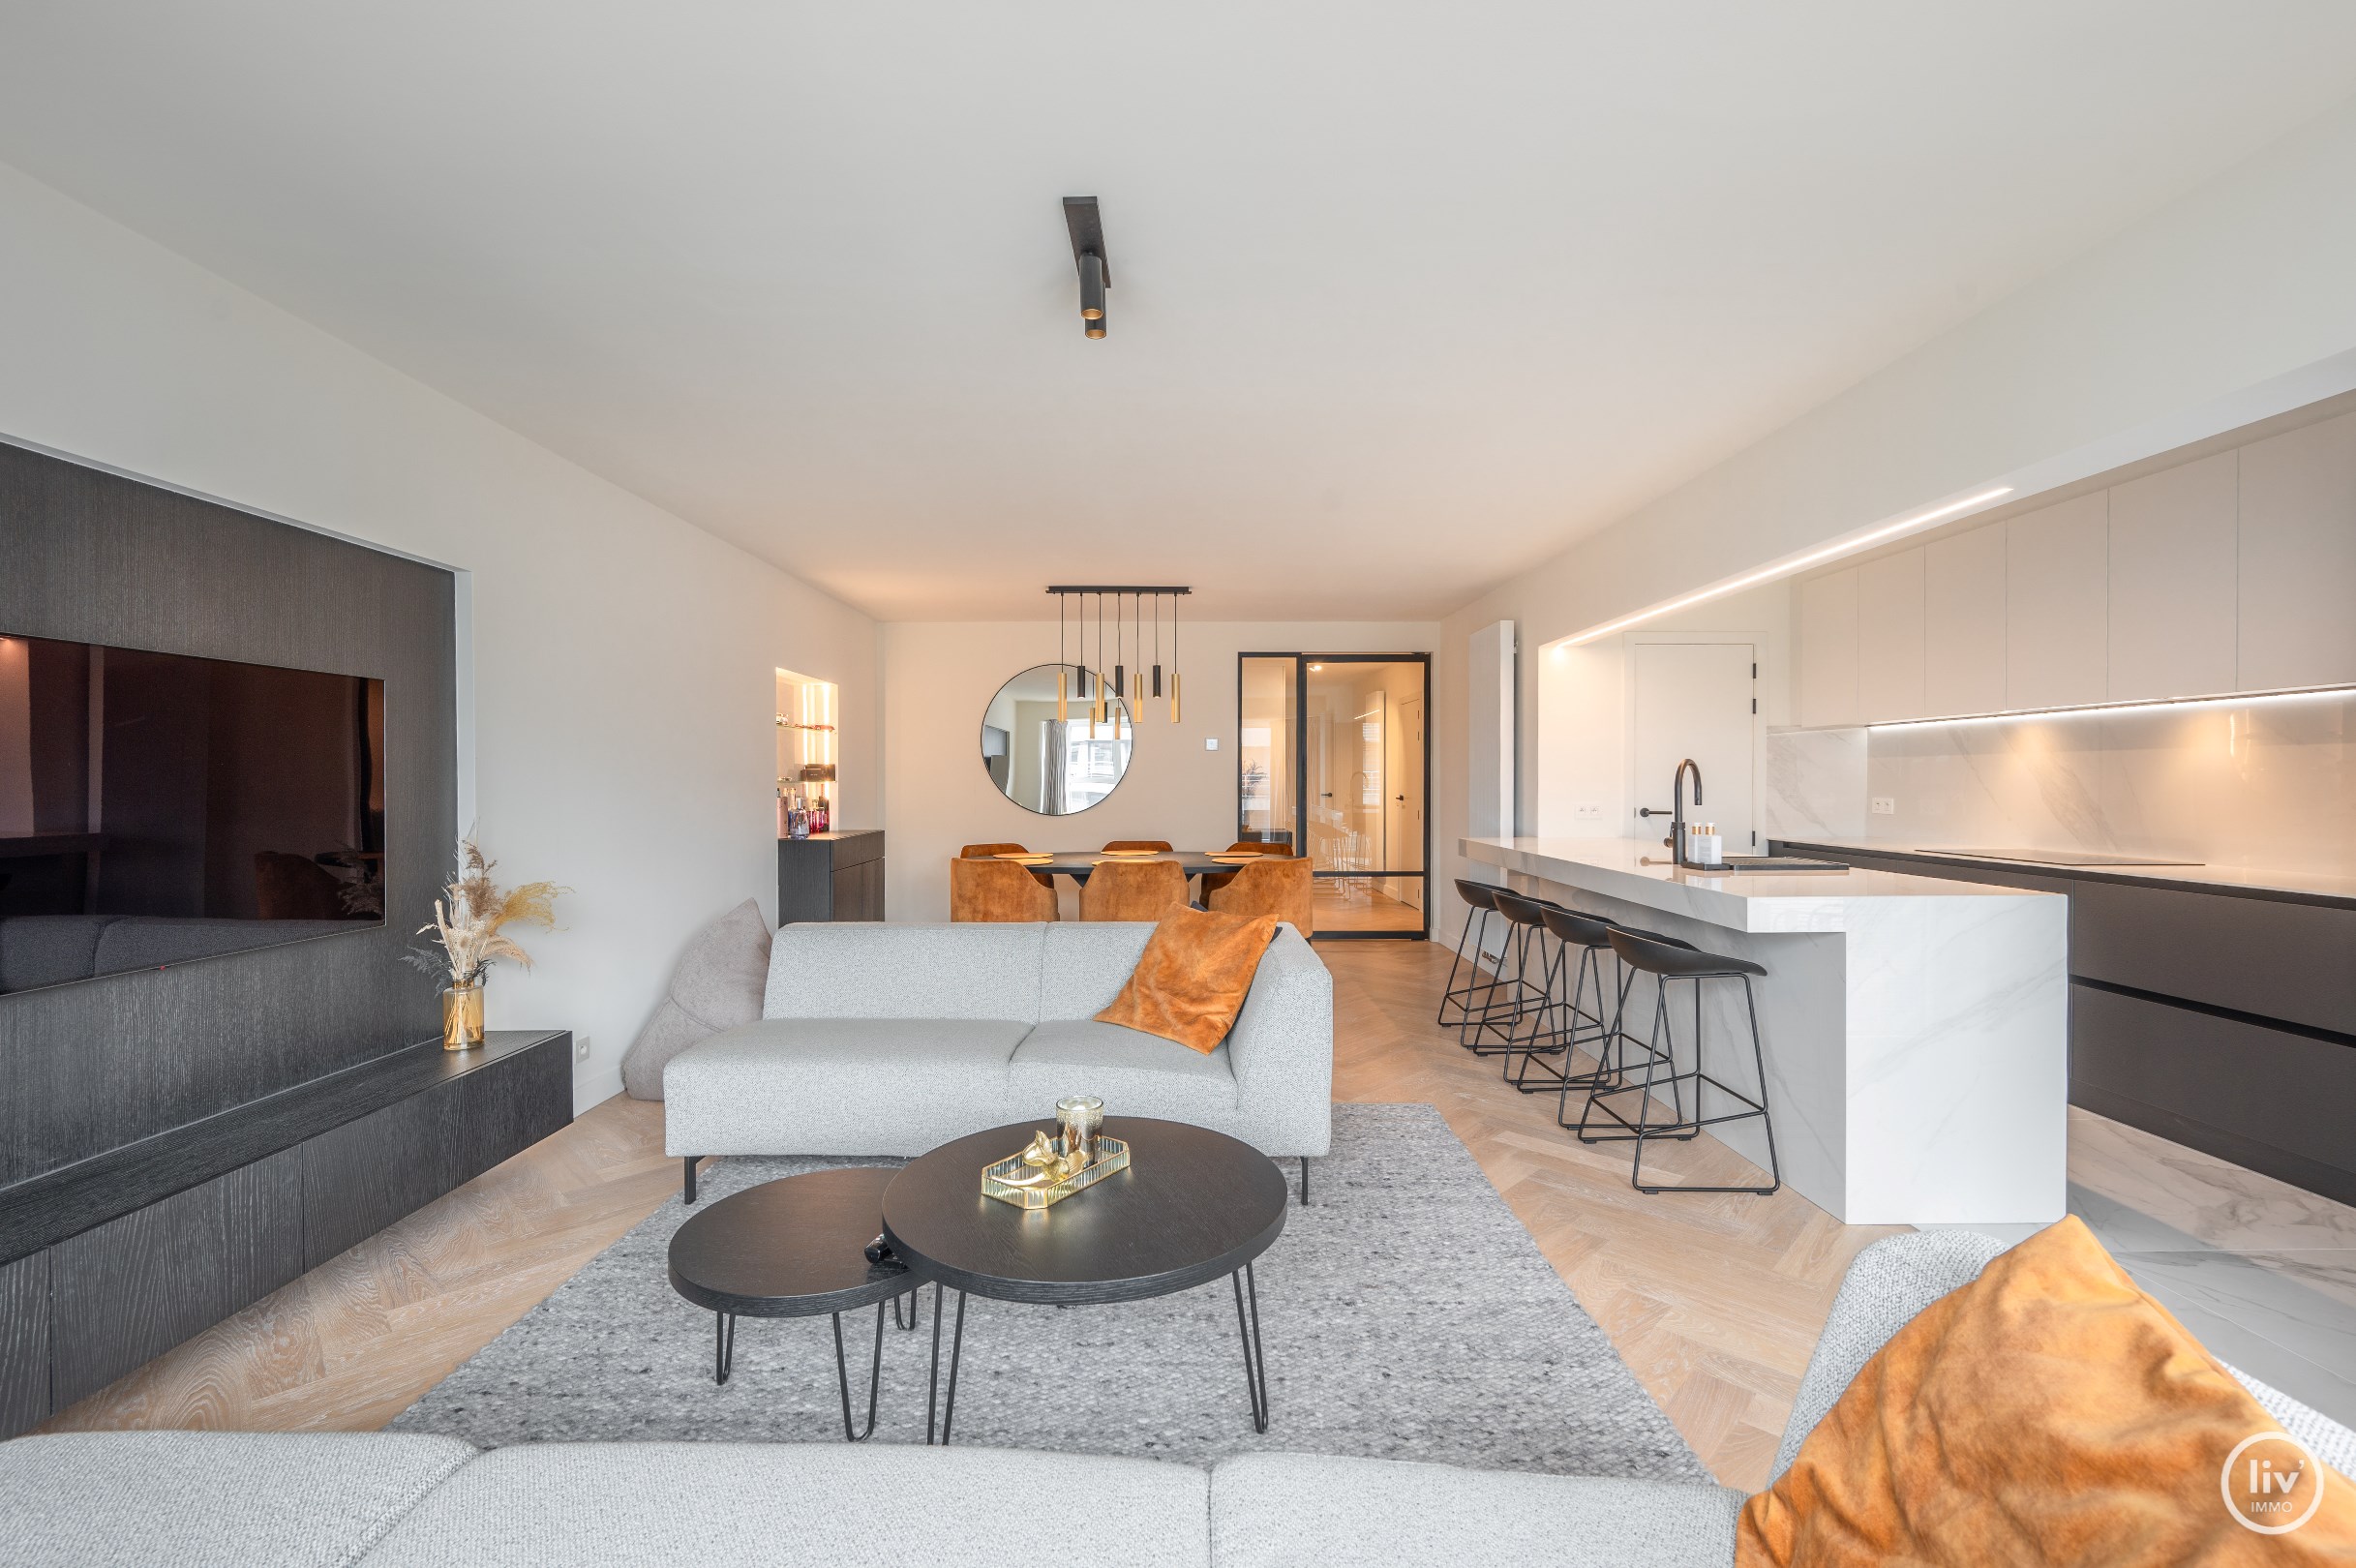 Appartement de 3 chambres superbement r&#233;nov&#233; avec une belle largeur situ&#233; sur la Lippenslaan &#224; Knokke. 